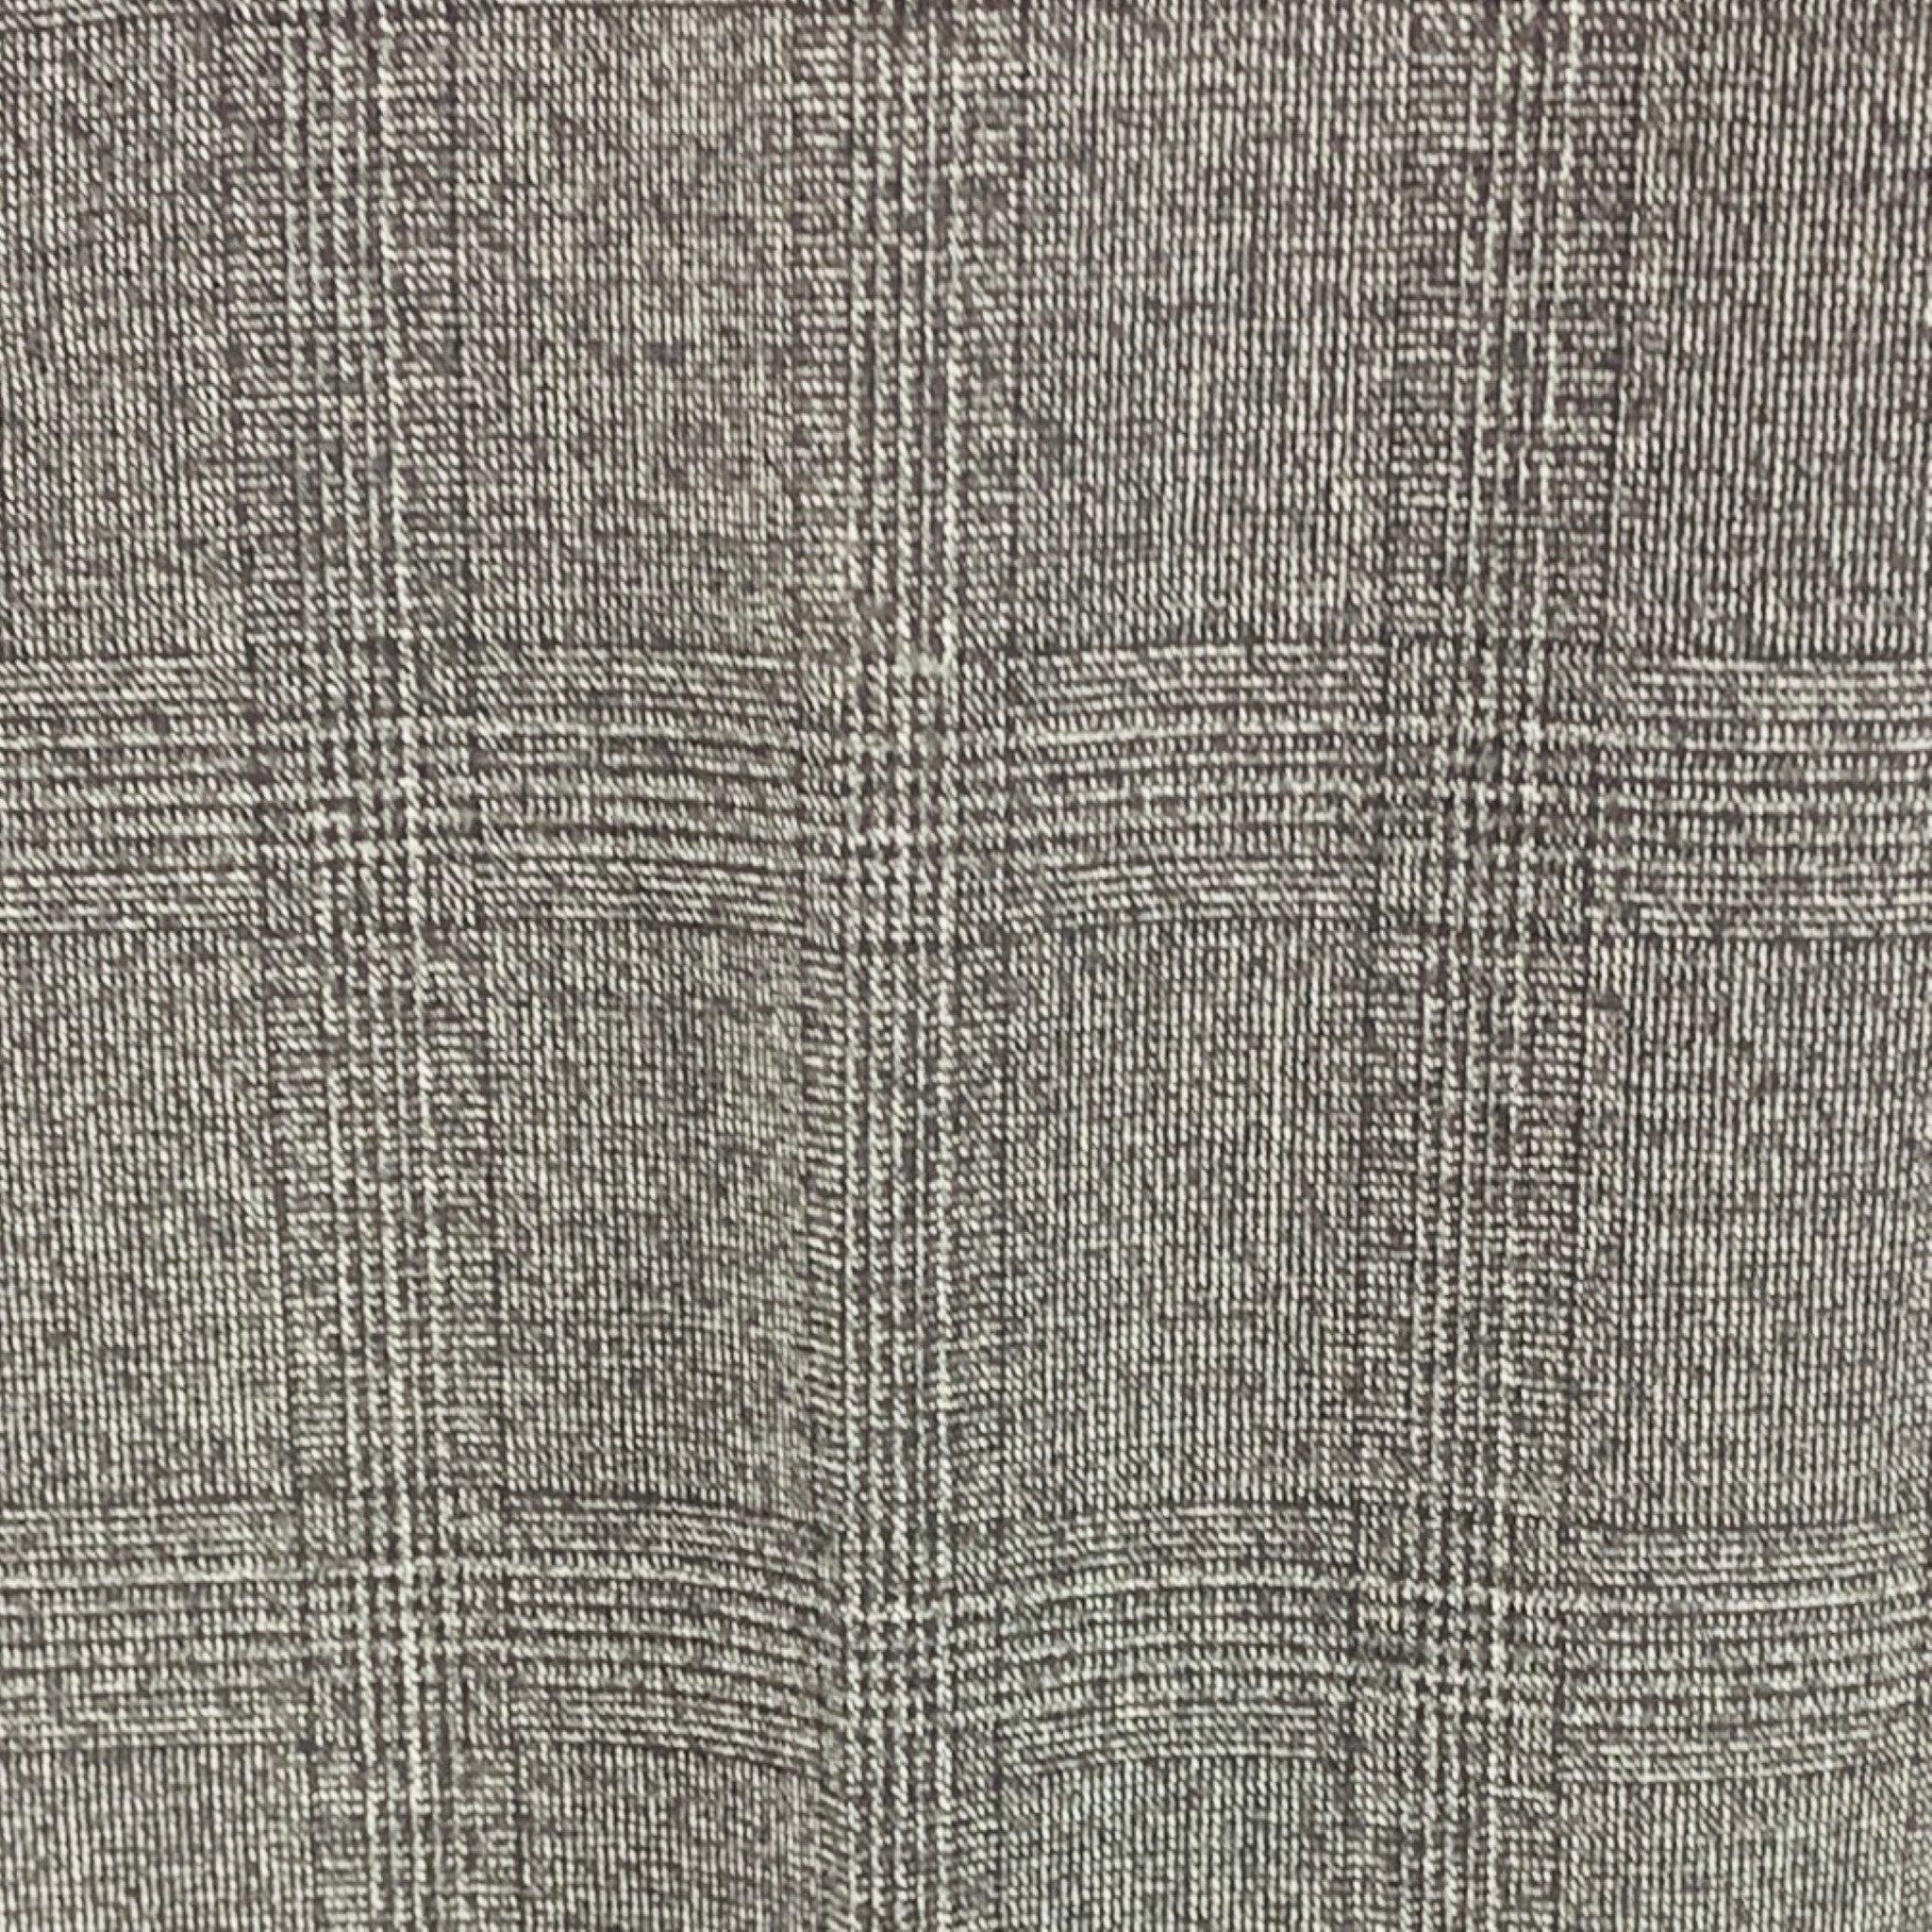 Pantalon CALVIN KLEIN en laine et polyester mélangés, noir et gris délavés, avec taille haute, coupe régulière et fermeture à glissière.Excellent état d'occasion. 

Marqué :   32 

Mesures : 
  Taille : 32 pouces Taille : 9.5 pouces Entrejambe : 30